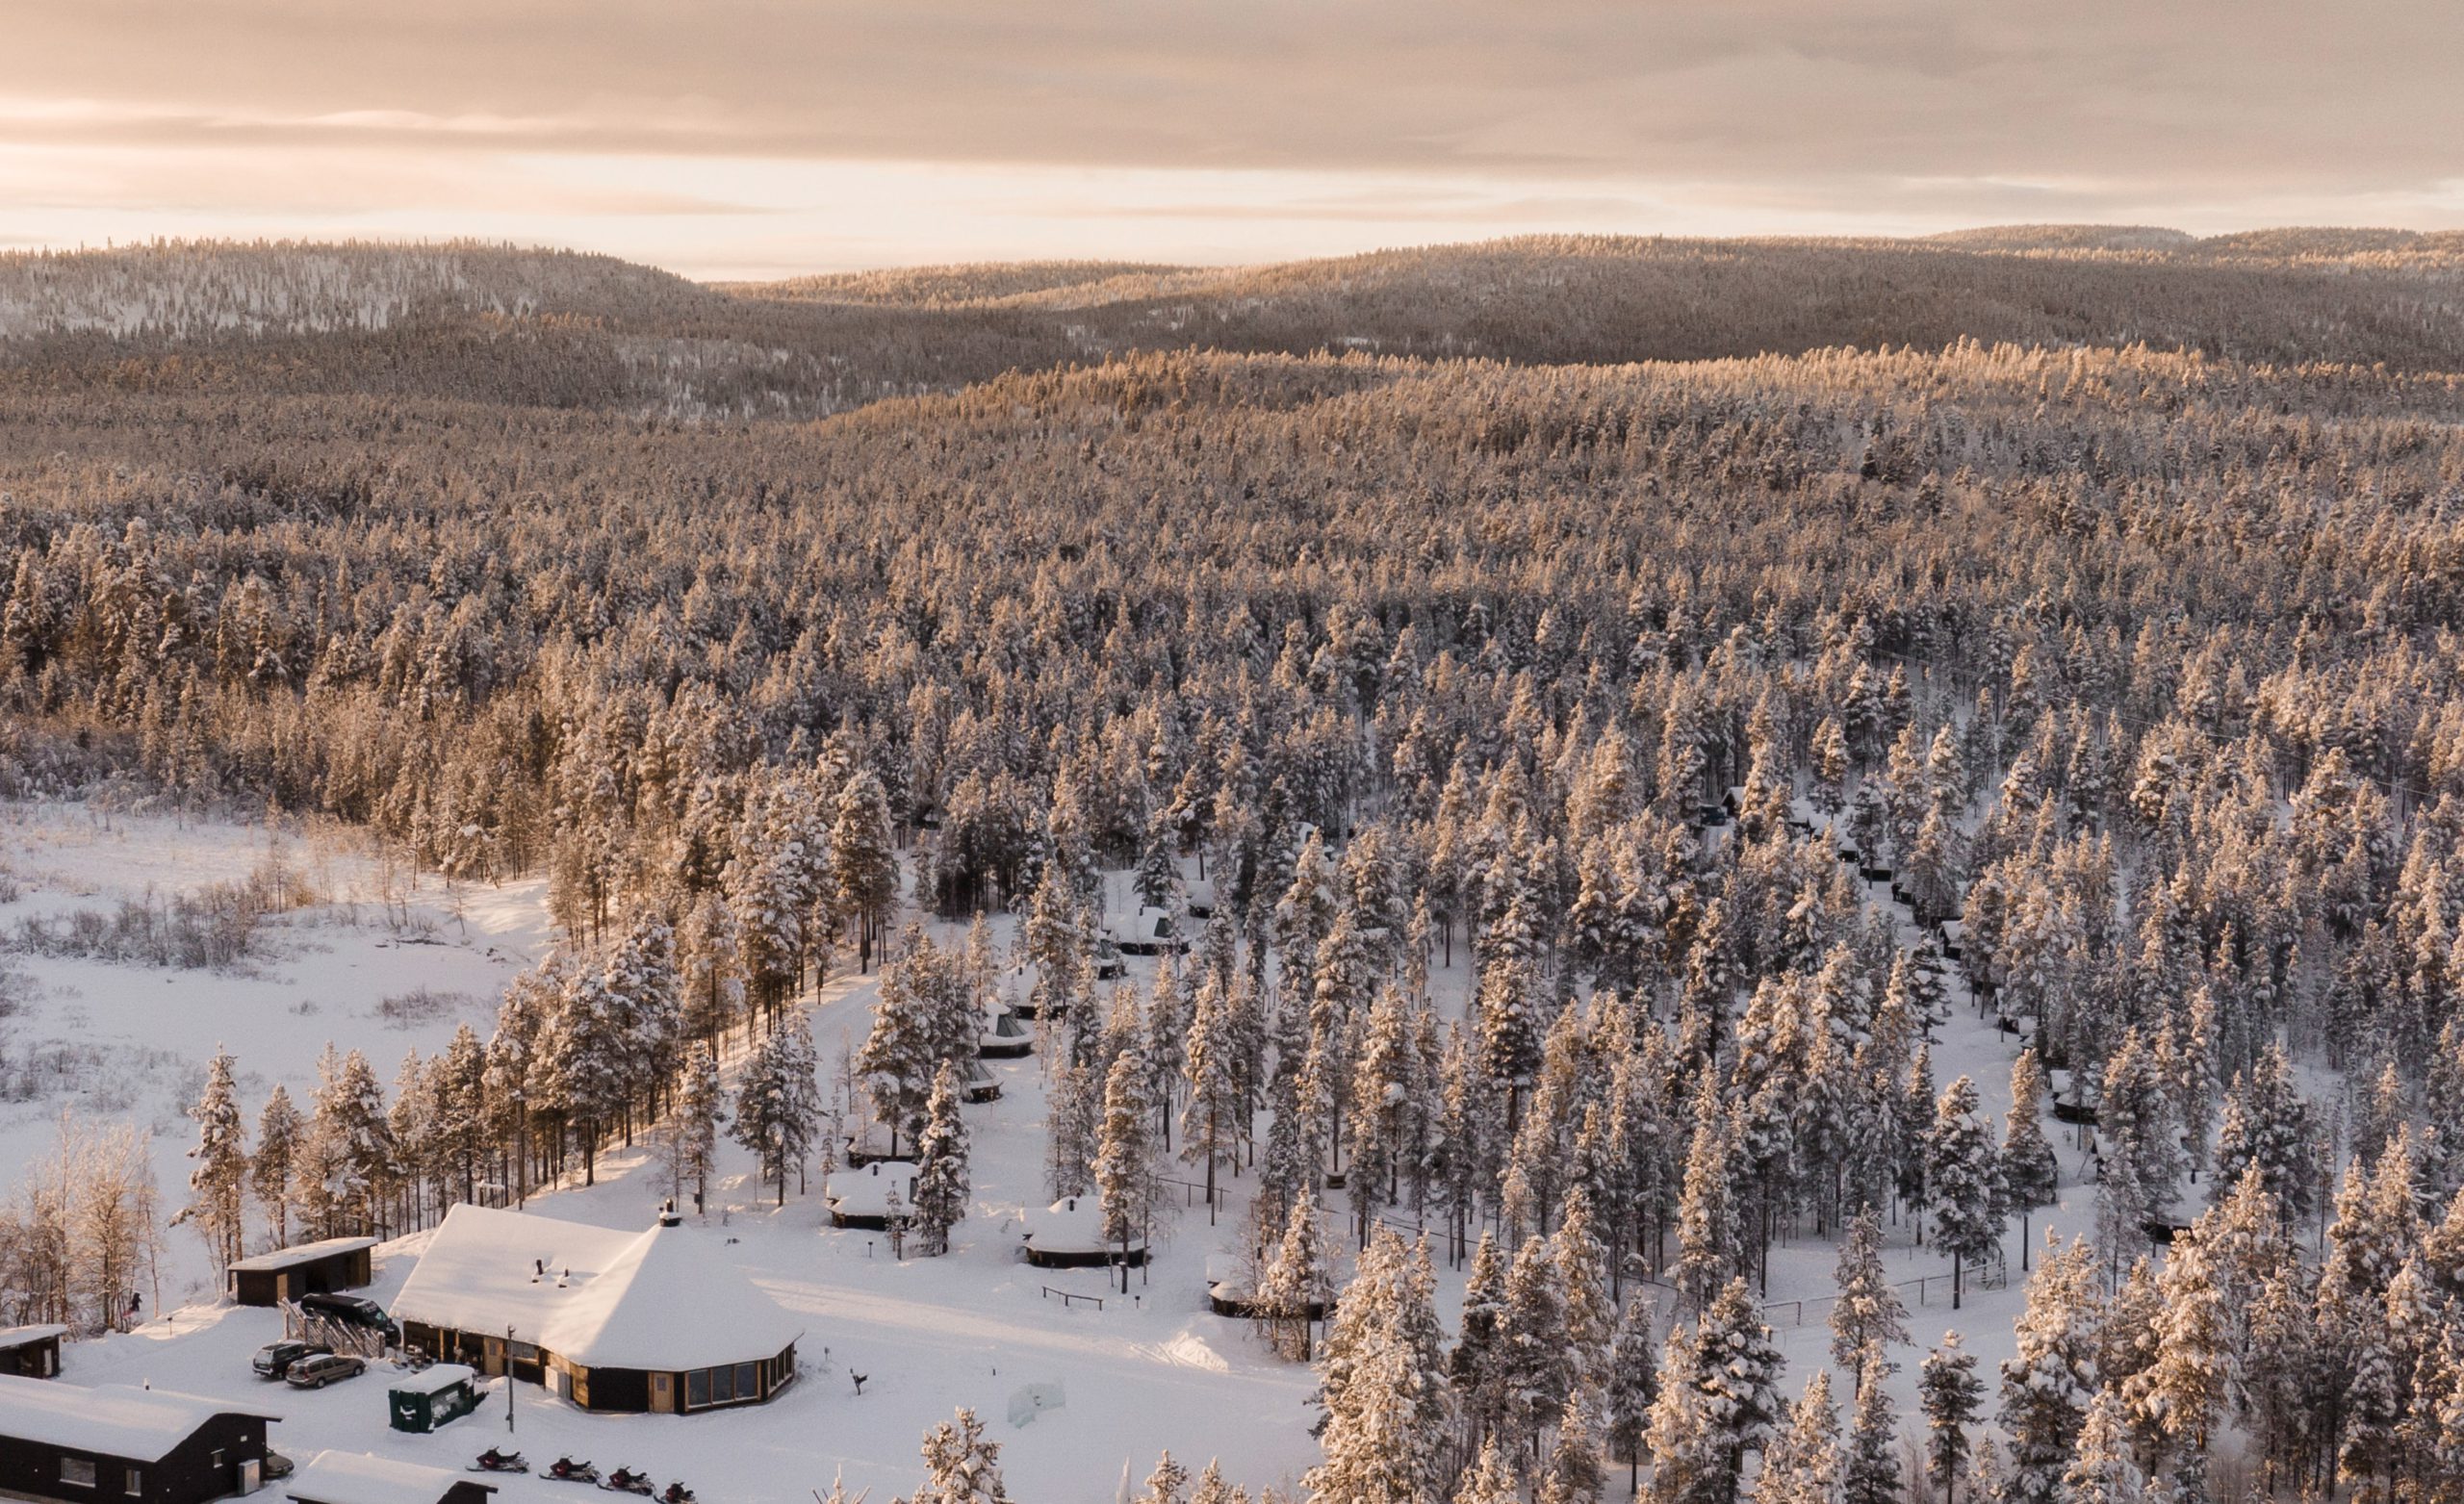 Aurora Village Winter 2019 Ivalo Lapland Finland